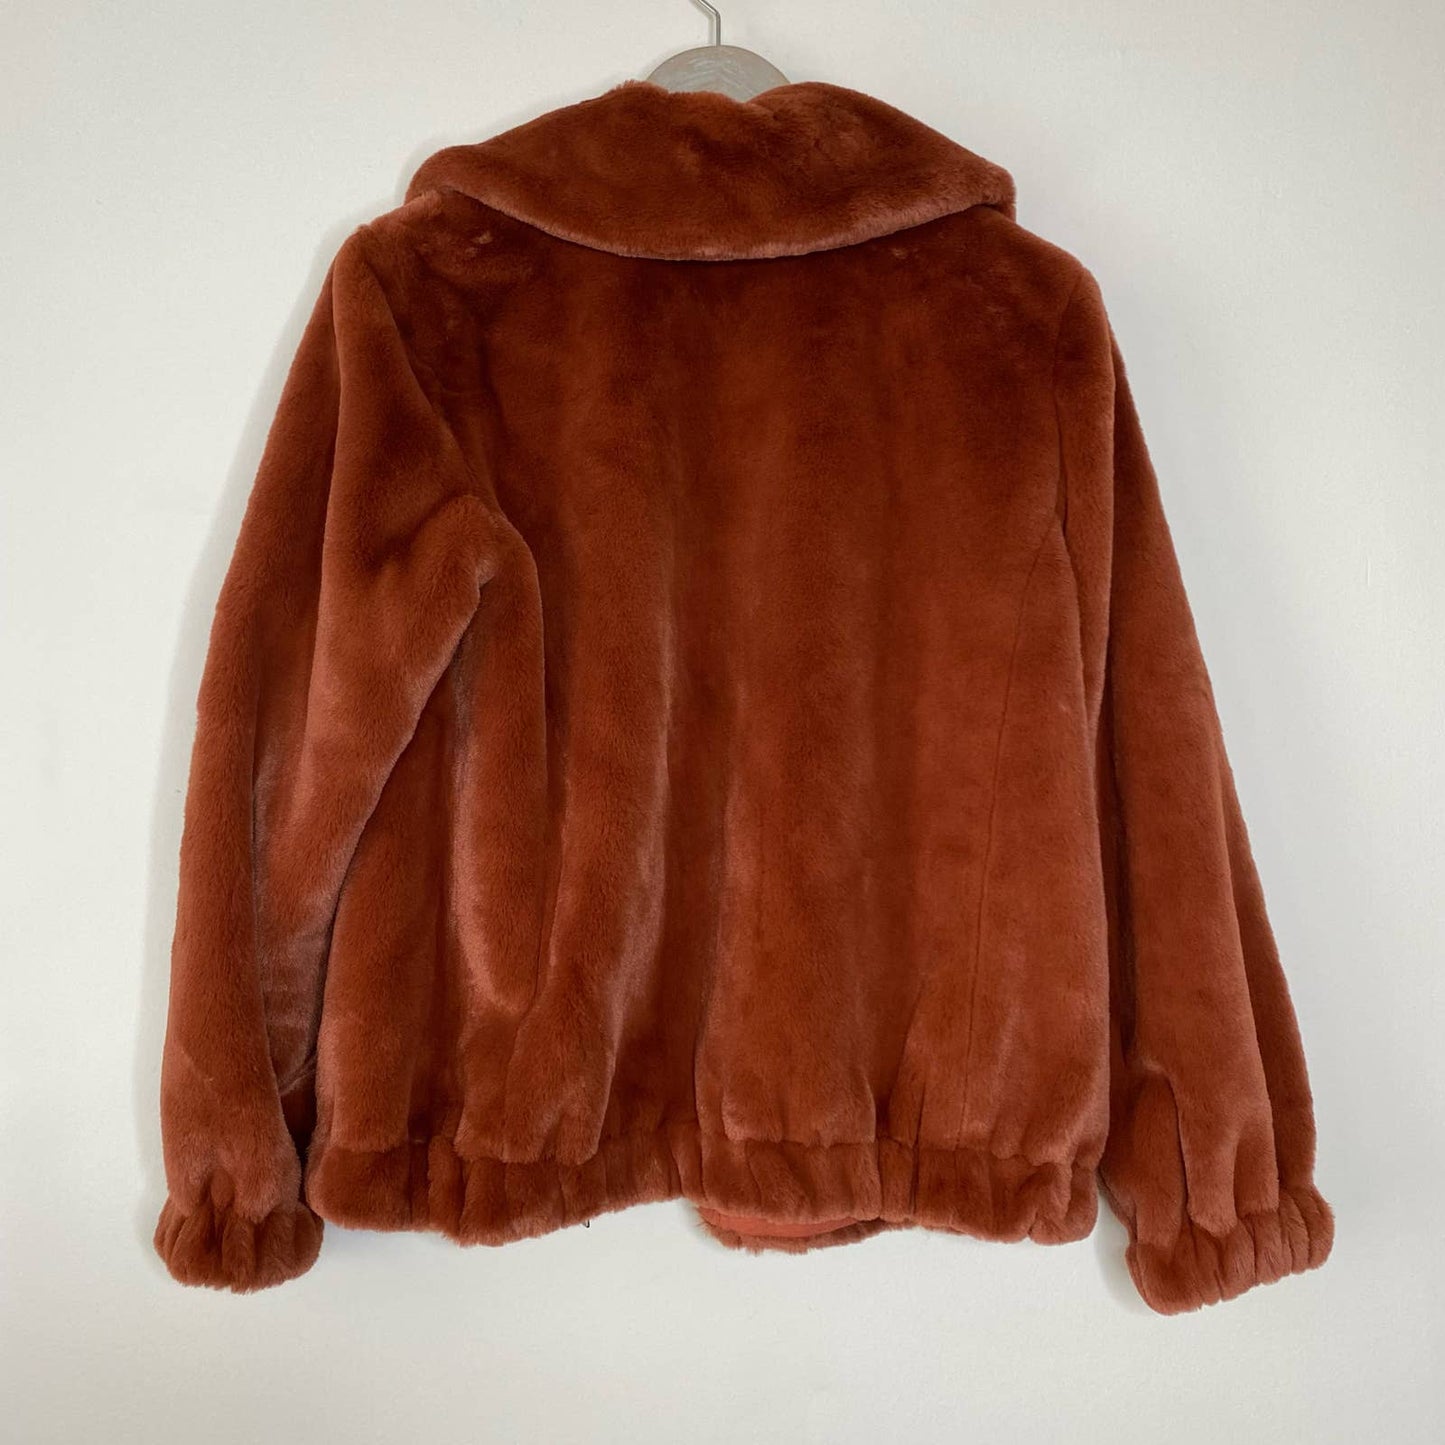 REBECCA TAYLOR Plush Spice Copper Red Spread Collar Coat Size Large NEW